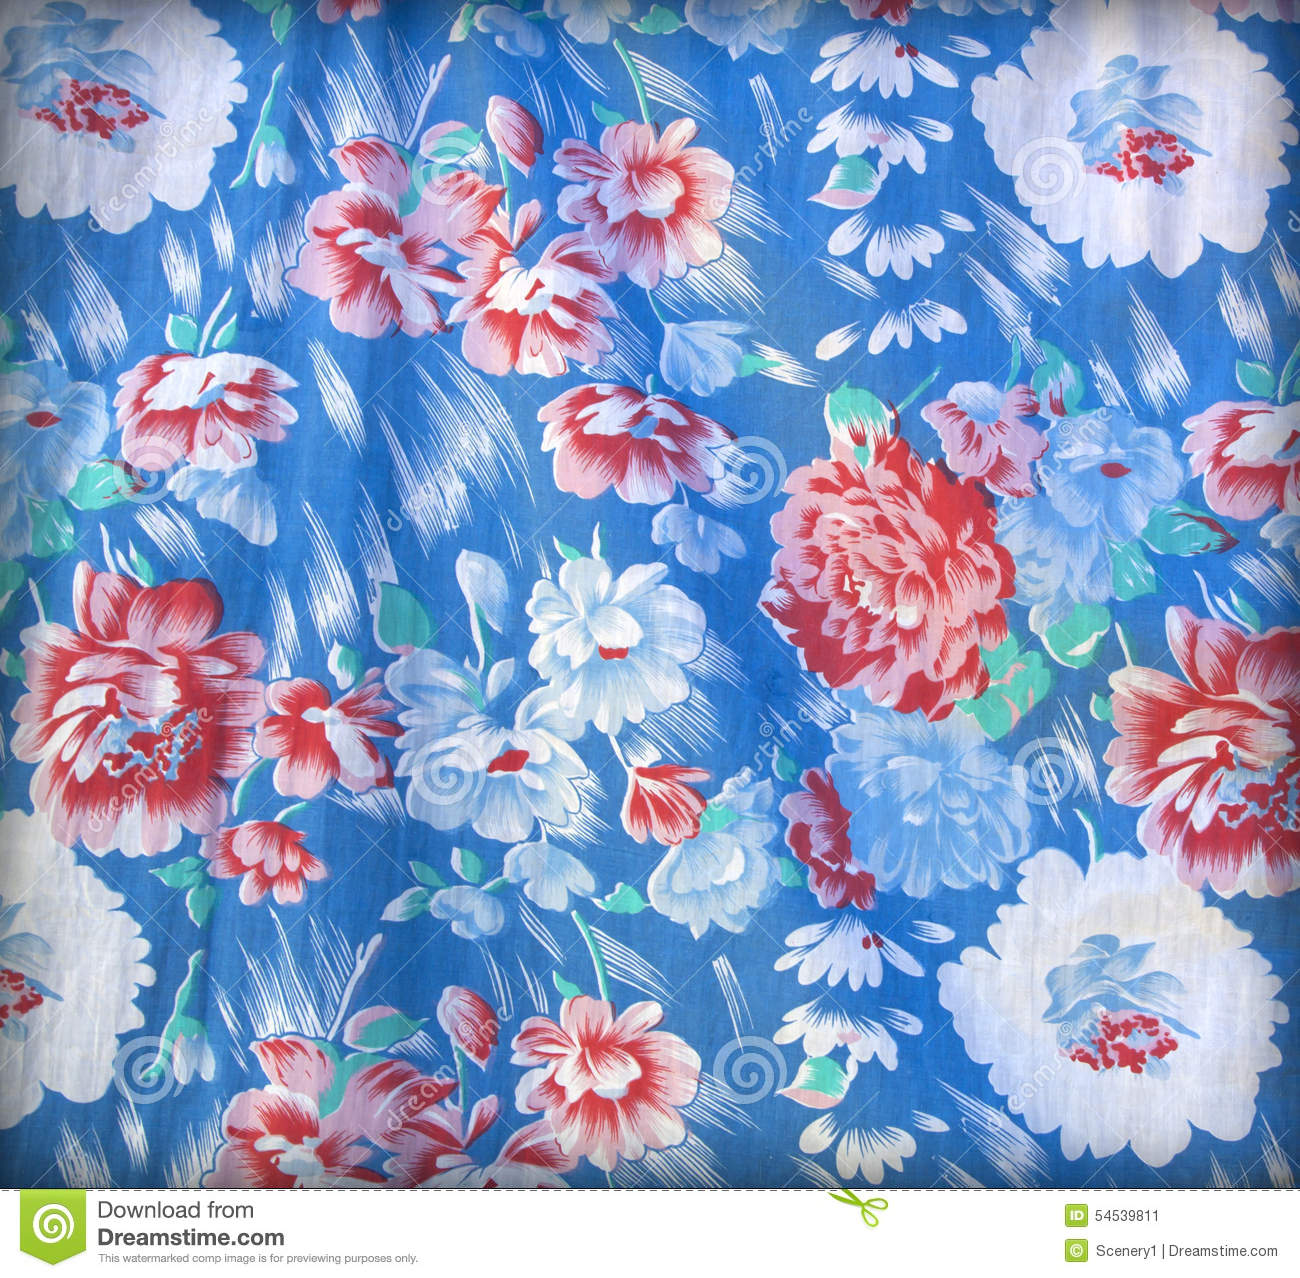 친츠 벽지,푸른,아쿠아,무늬,꽃 무늬 디자인,직물